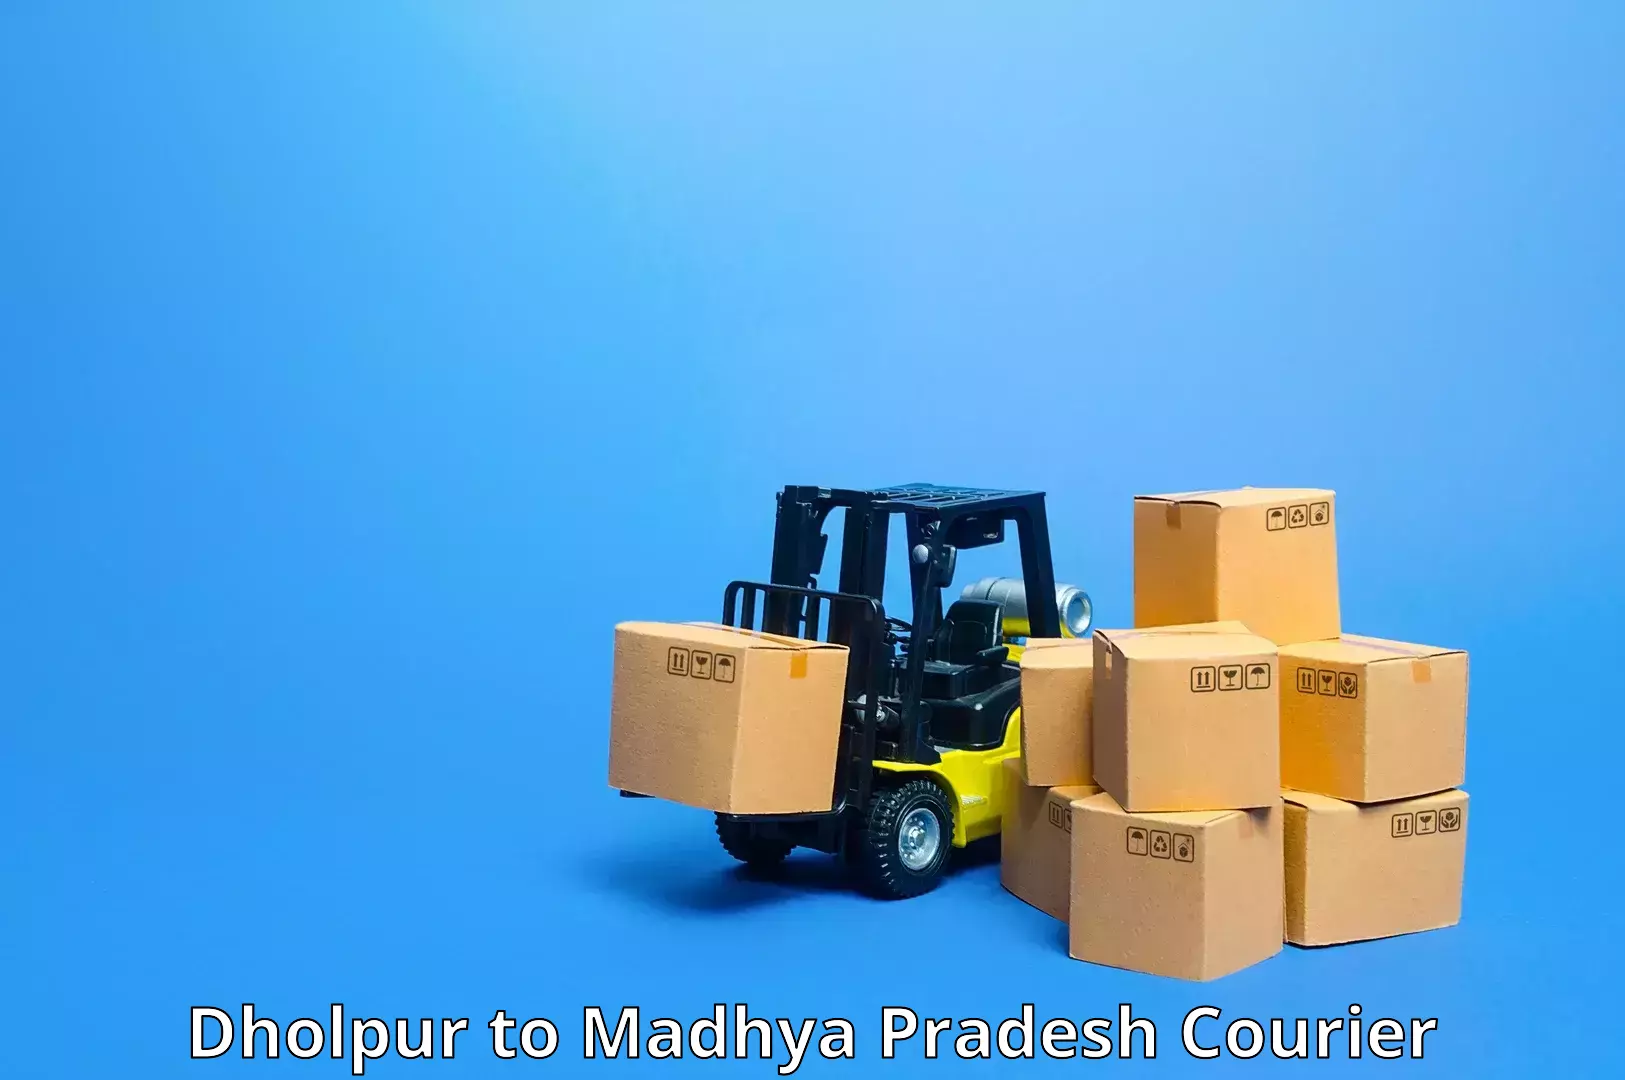 24-hour courier service Dholpur to Vidisha